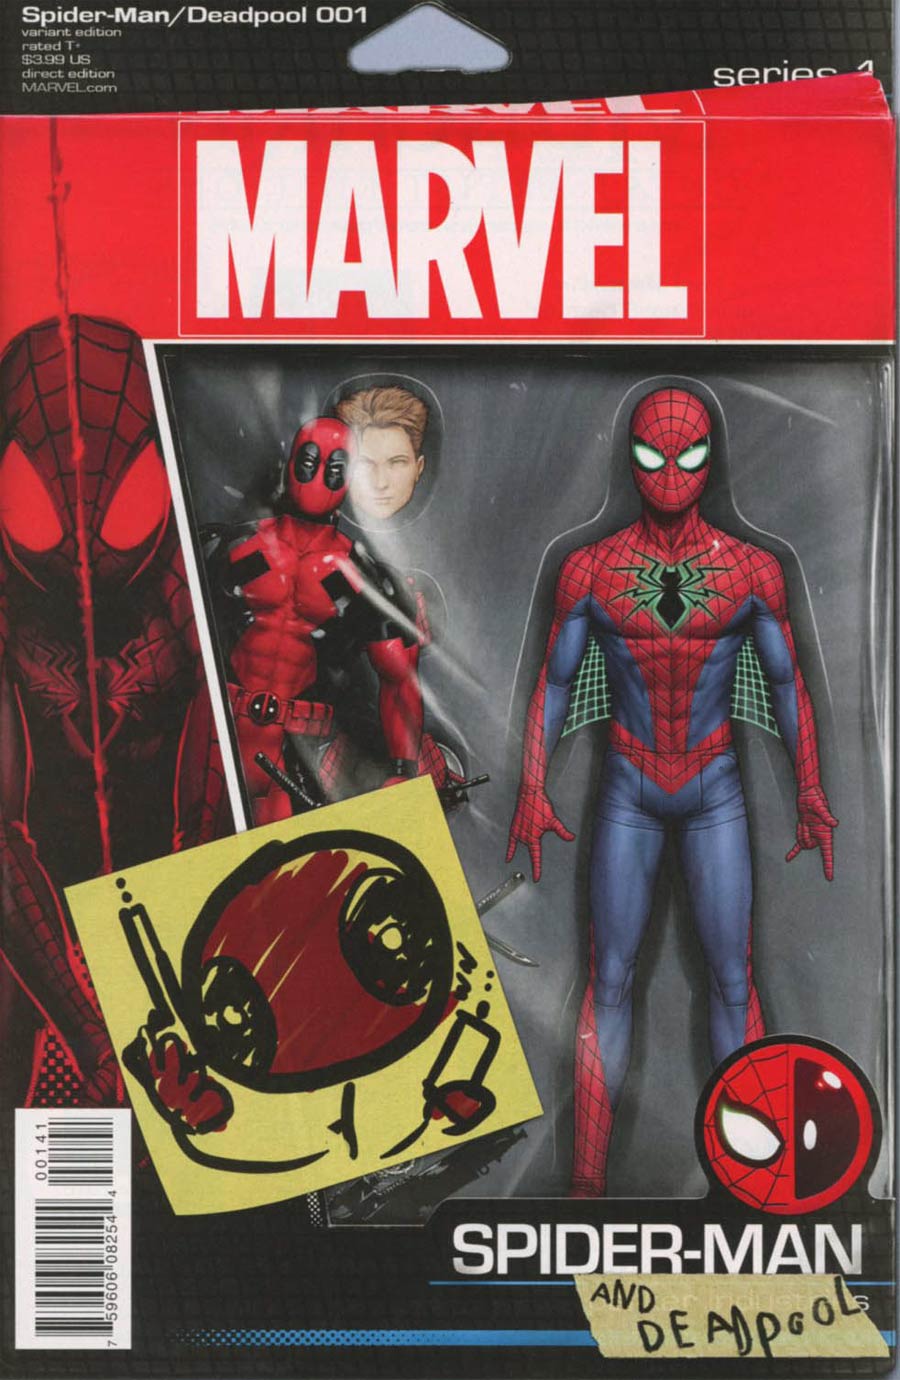 Spider-Man Deadpool #1 Cover C Variant John Tyler Christopher Action Figure Cover